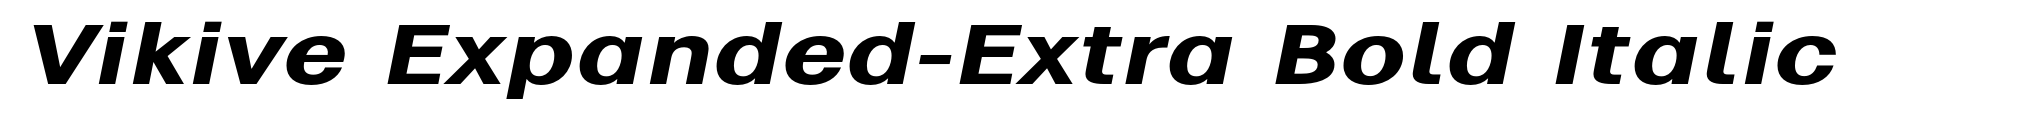 Vikive Expanded-Extra Bold Italic image